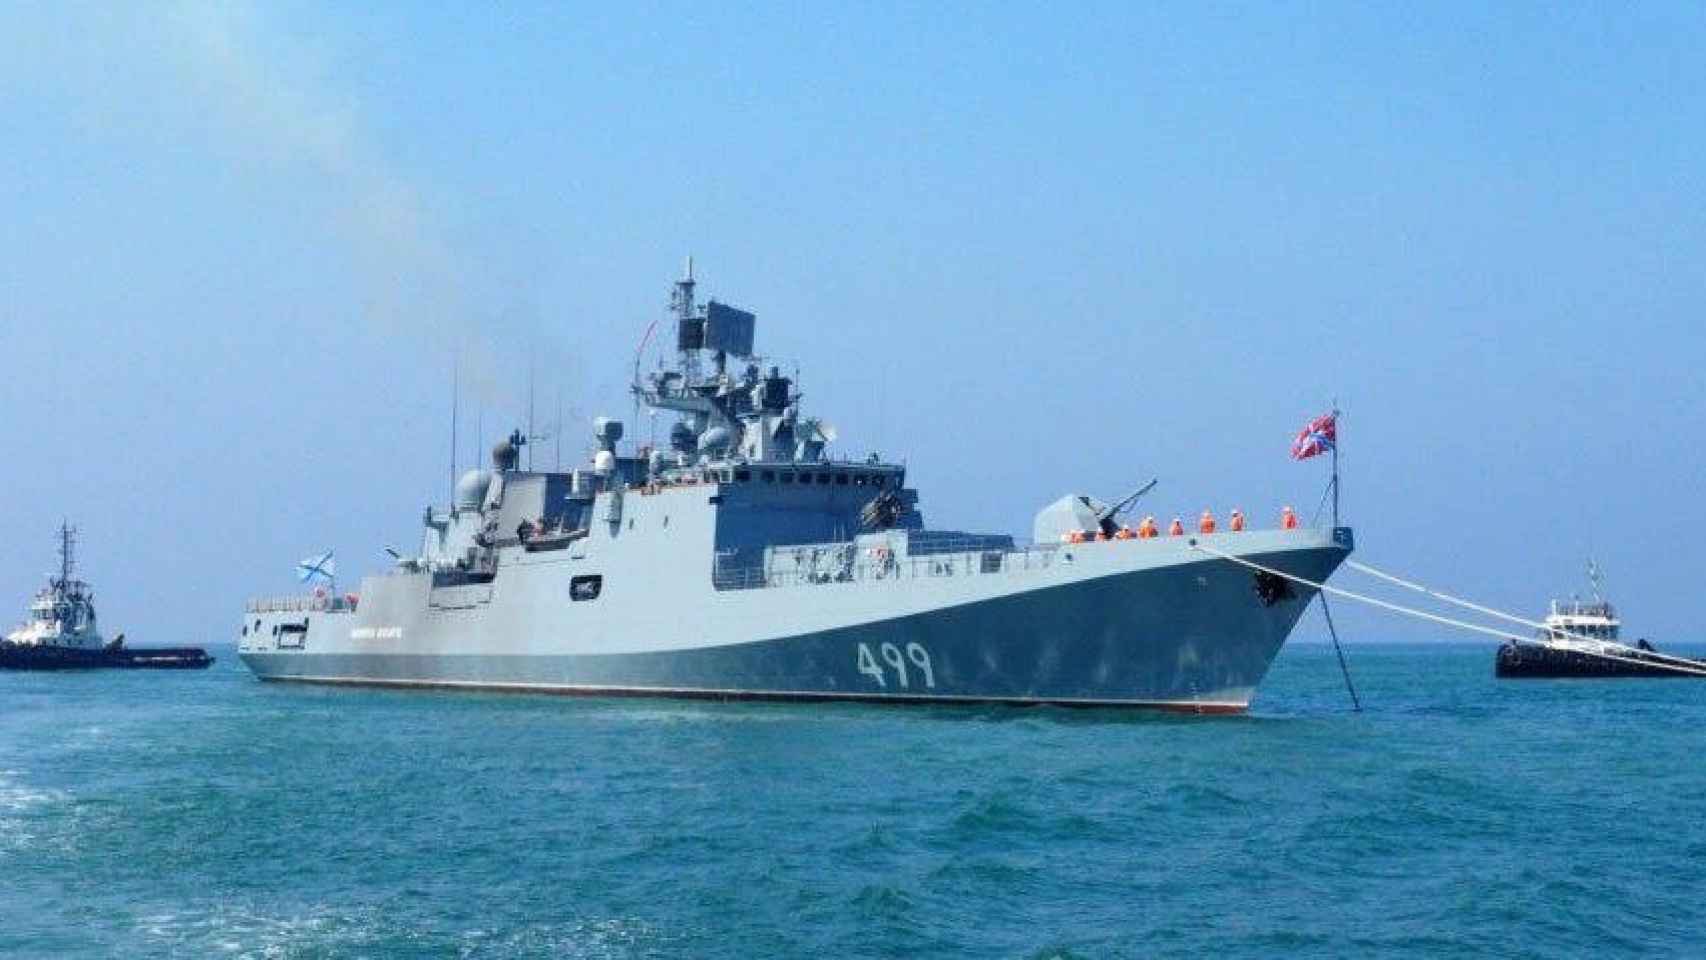 Fragata Almirante Makarov